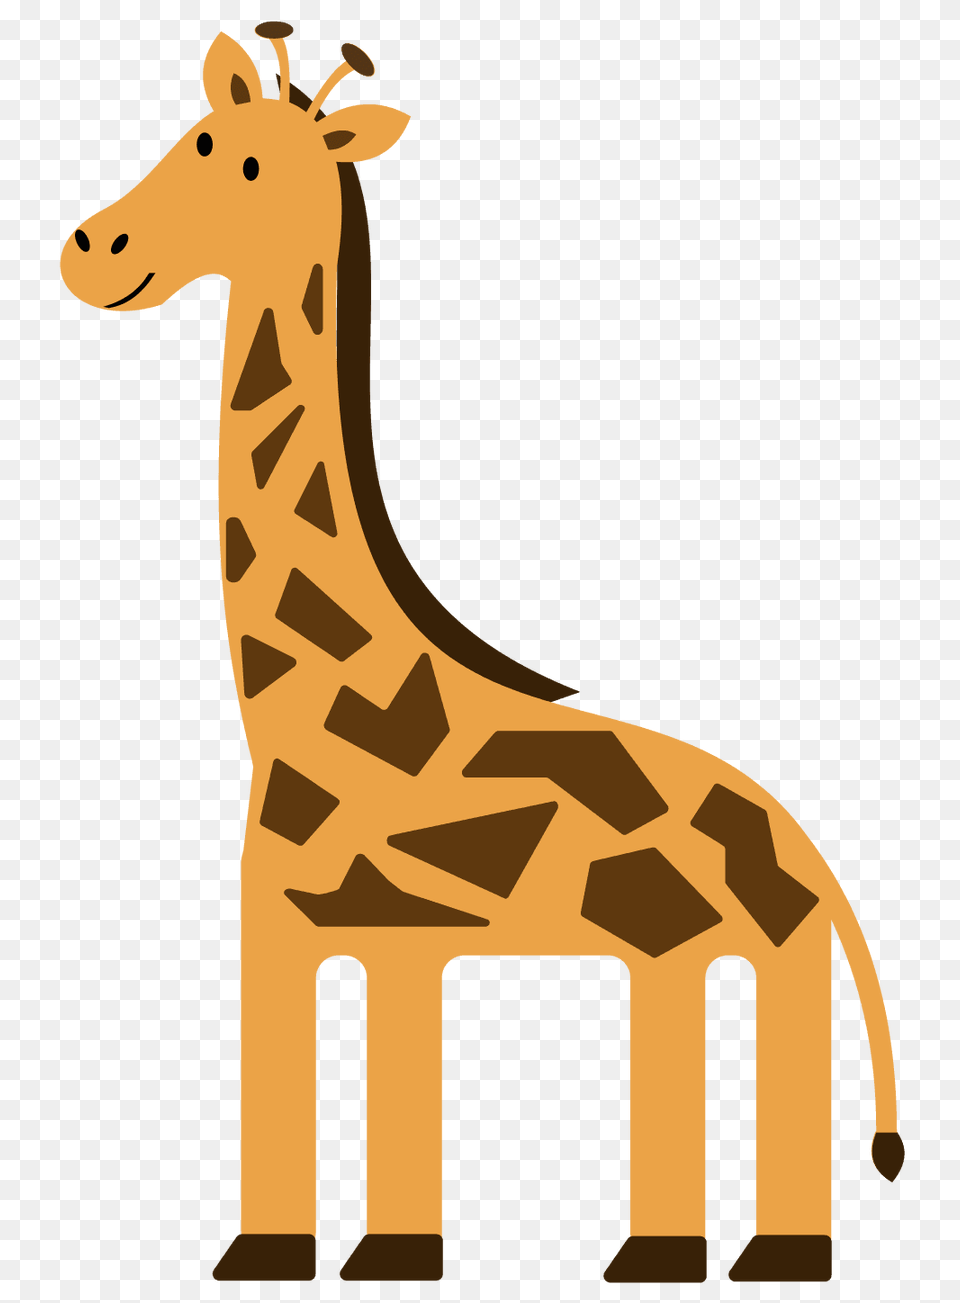 Giraffe Clipart Me Giraffe Clip Art And Letter G, Animal, Mammal, Wildlife, Kangaroo Png Image